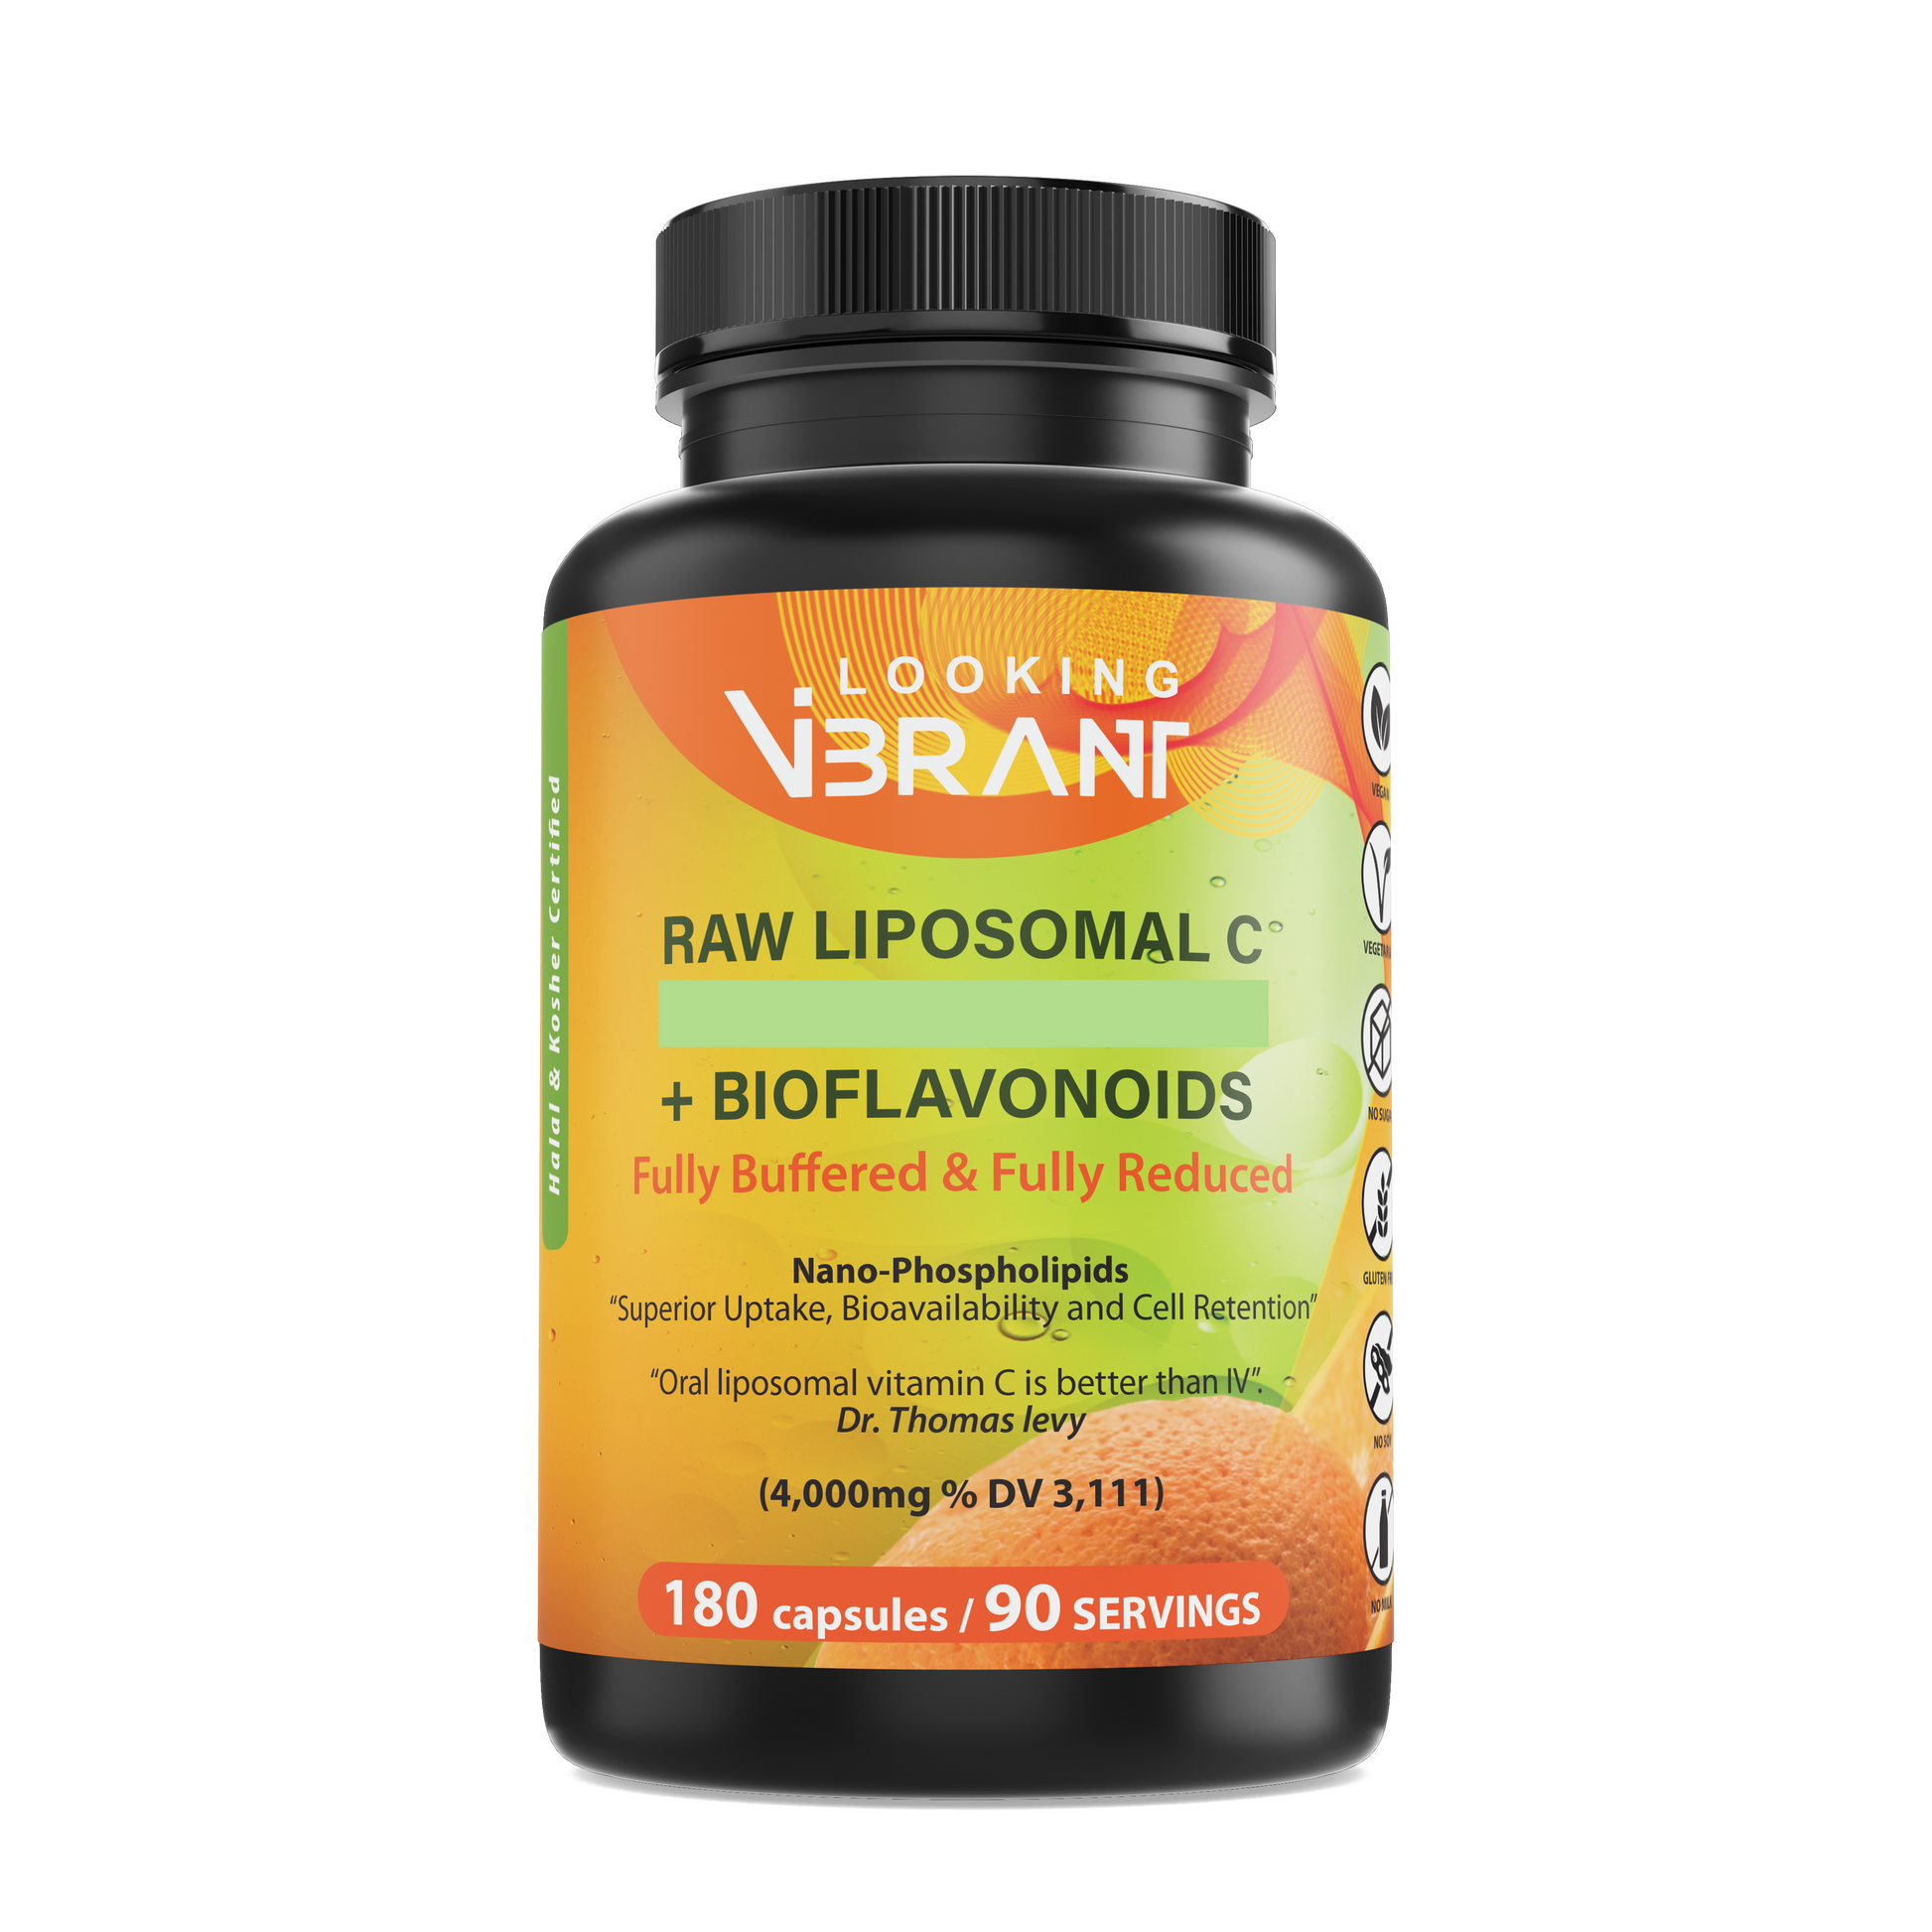 Raw Liposomal C + Bioflavonoids (90-servings vegetarian capsule) - lookingvibrantcom